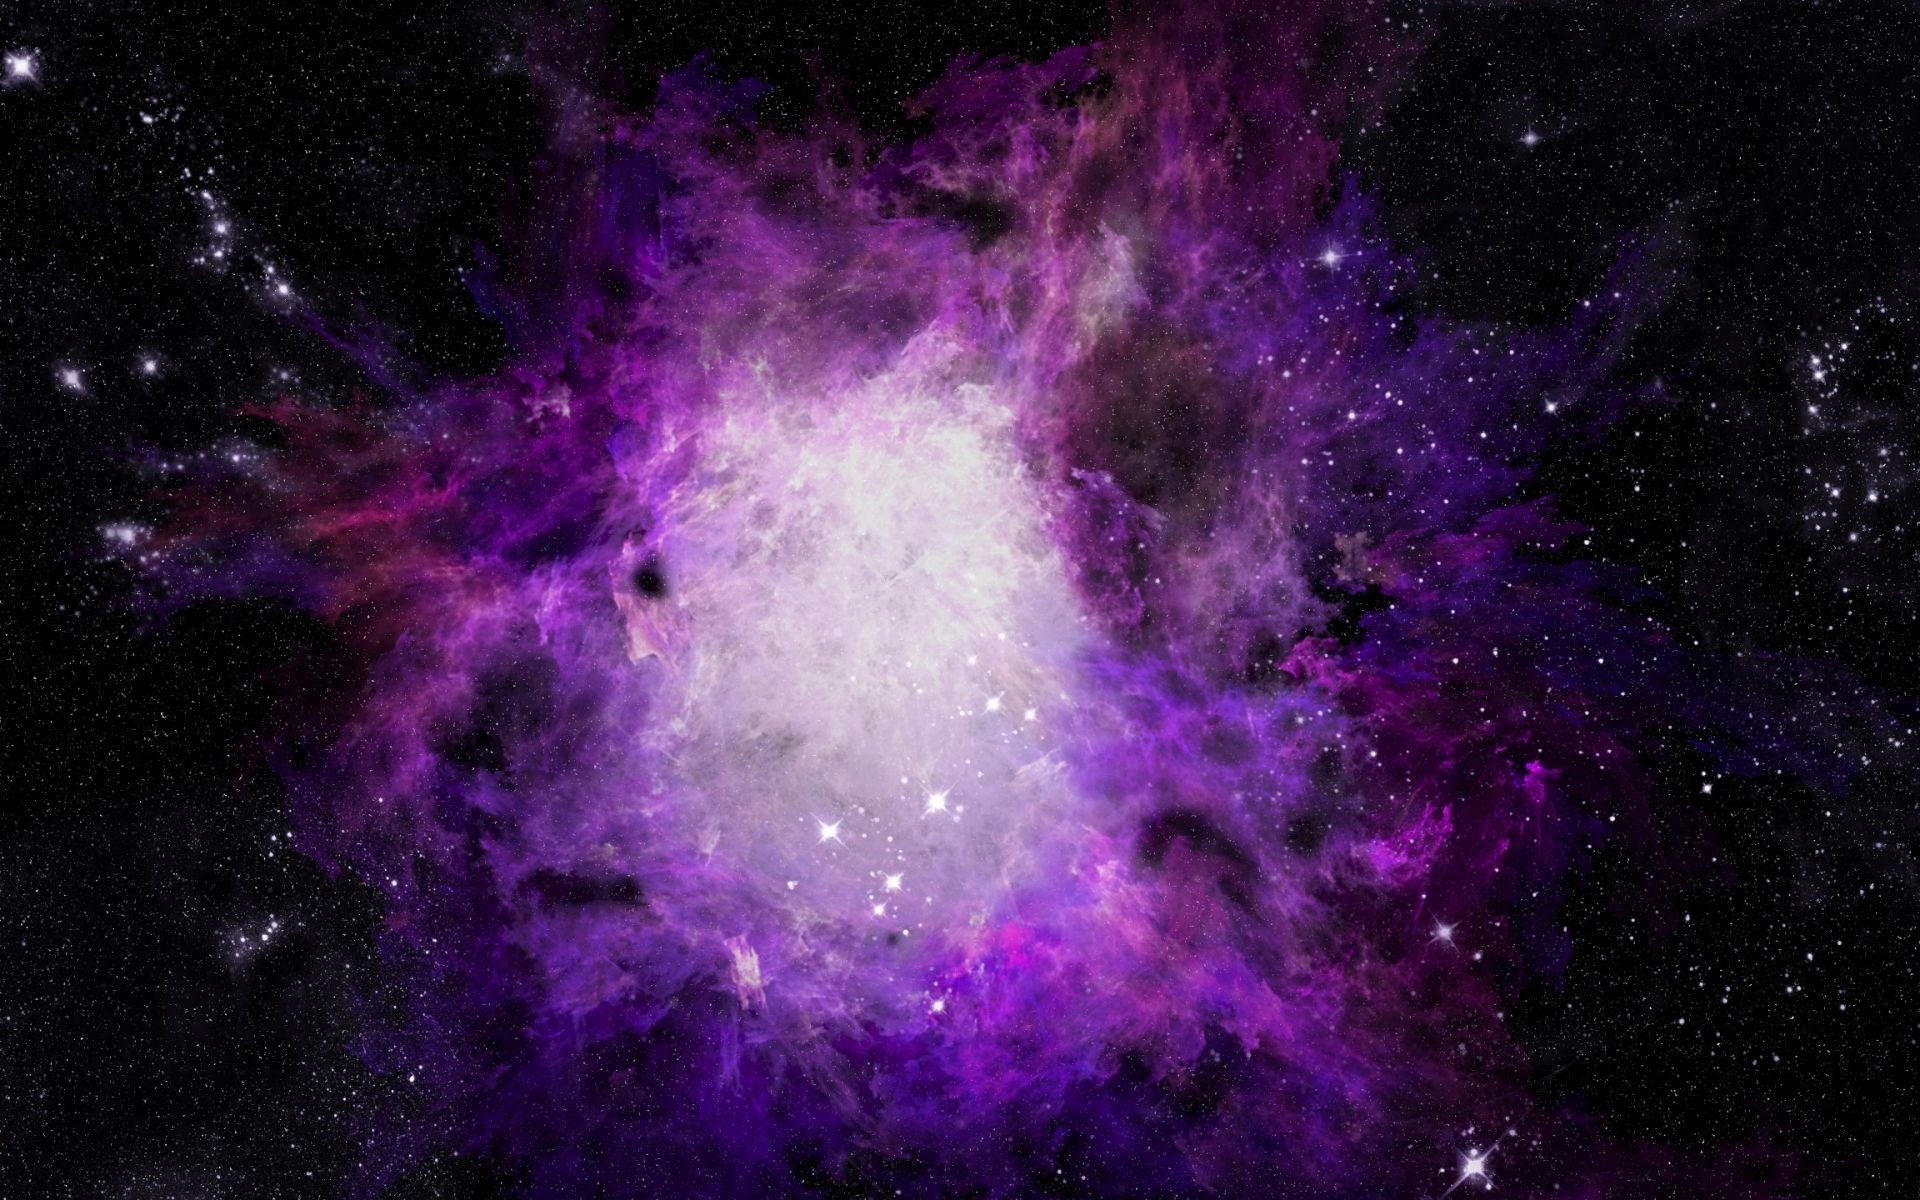 1920x1200 Galaxy wallpaper tumblr new free purple galaxy wallpapers desktop purple  galaxy tumblr themes jpg  Mustache